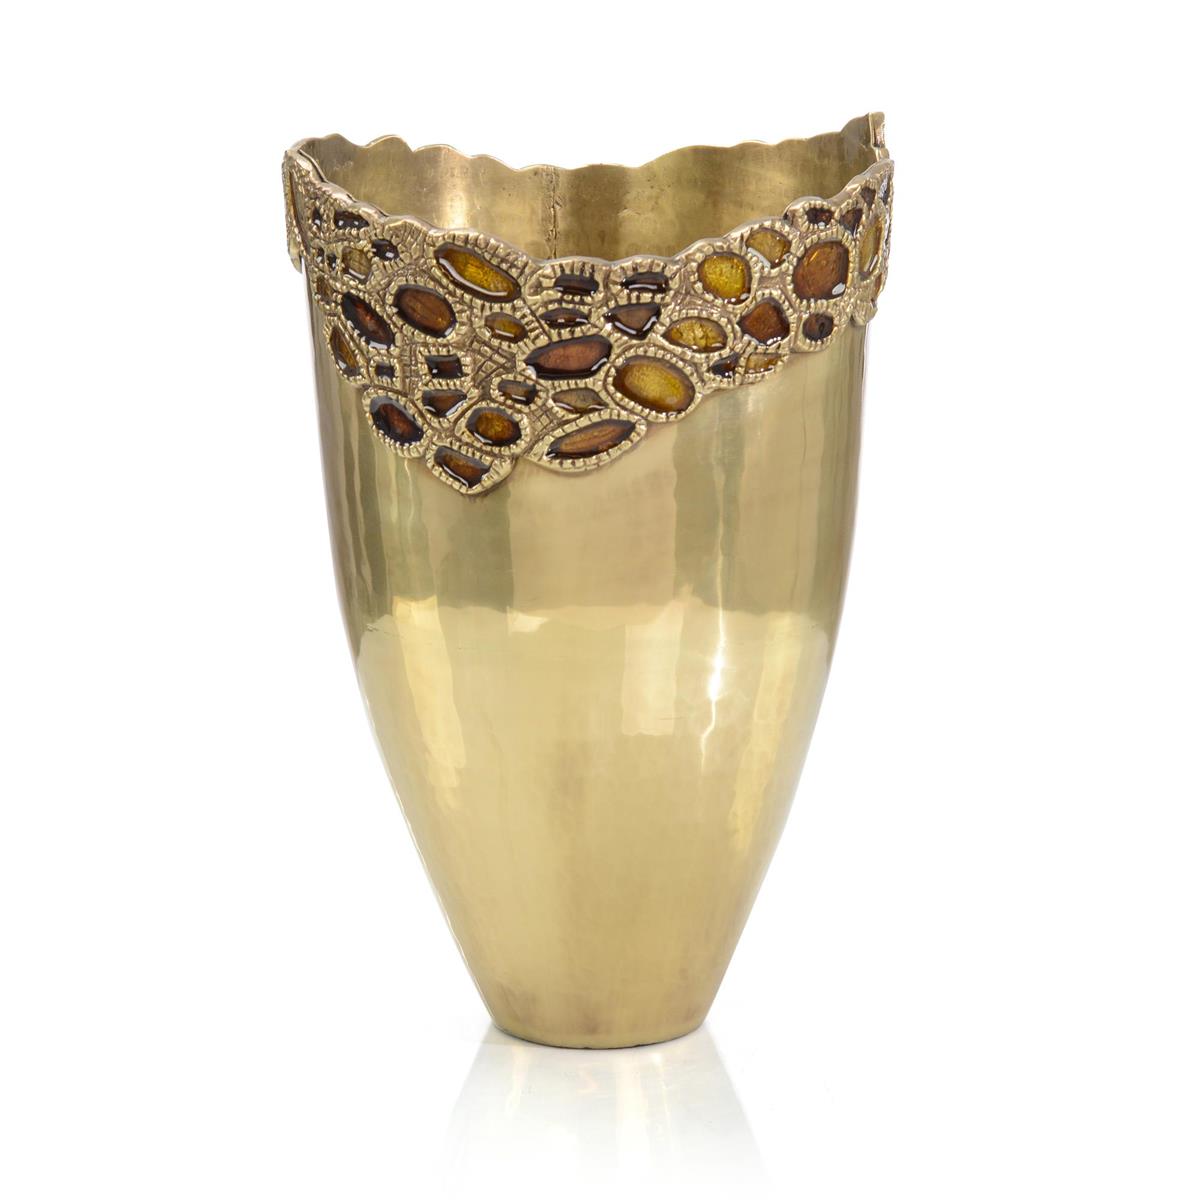 Adorned Brass Vase-John Richard-JR-JRA-14440-Vases-1-France and Son